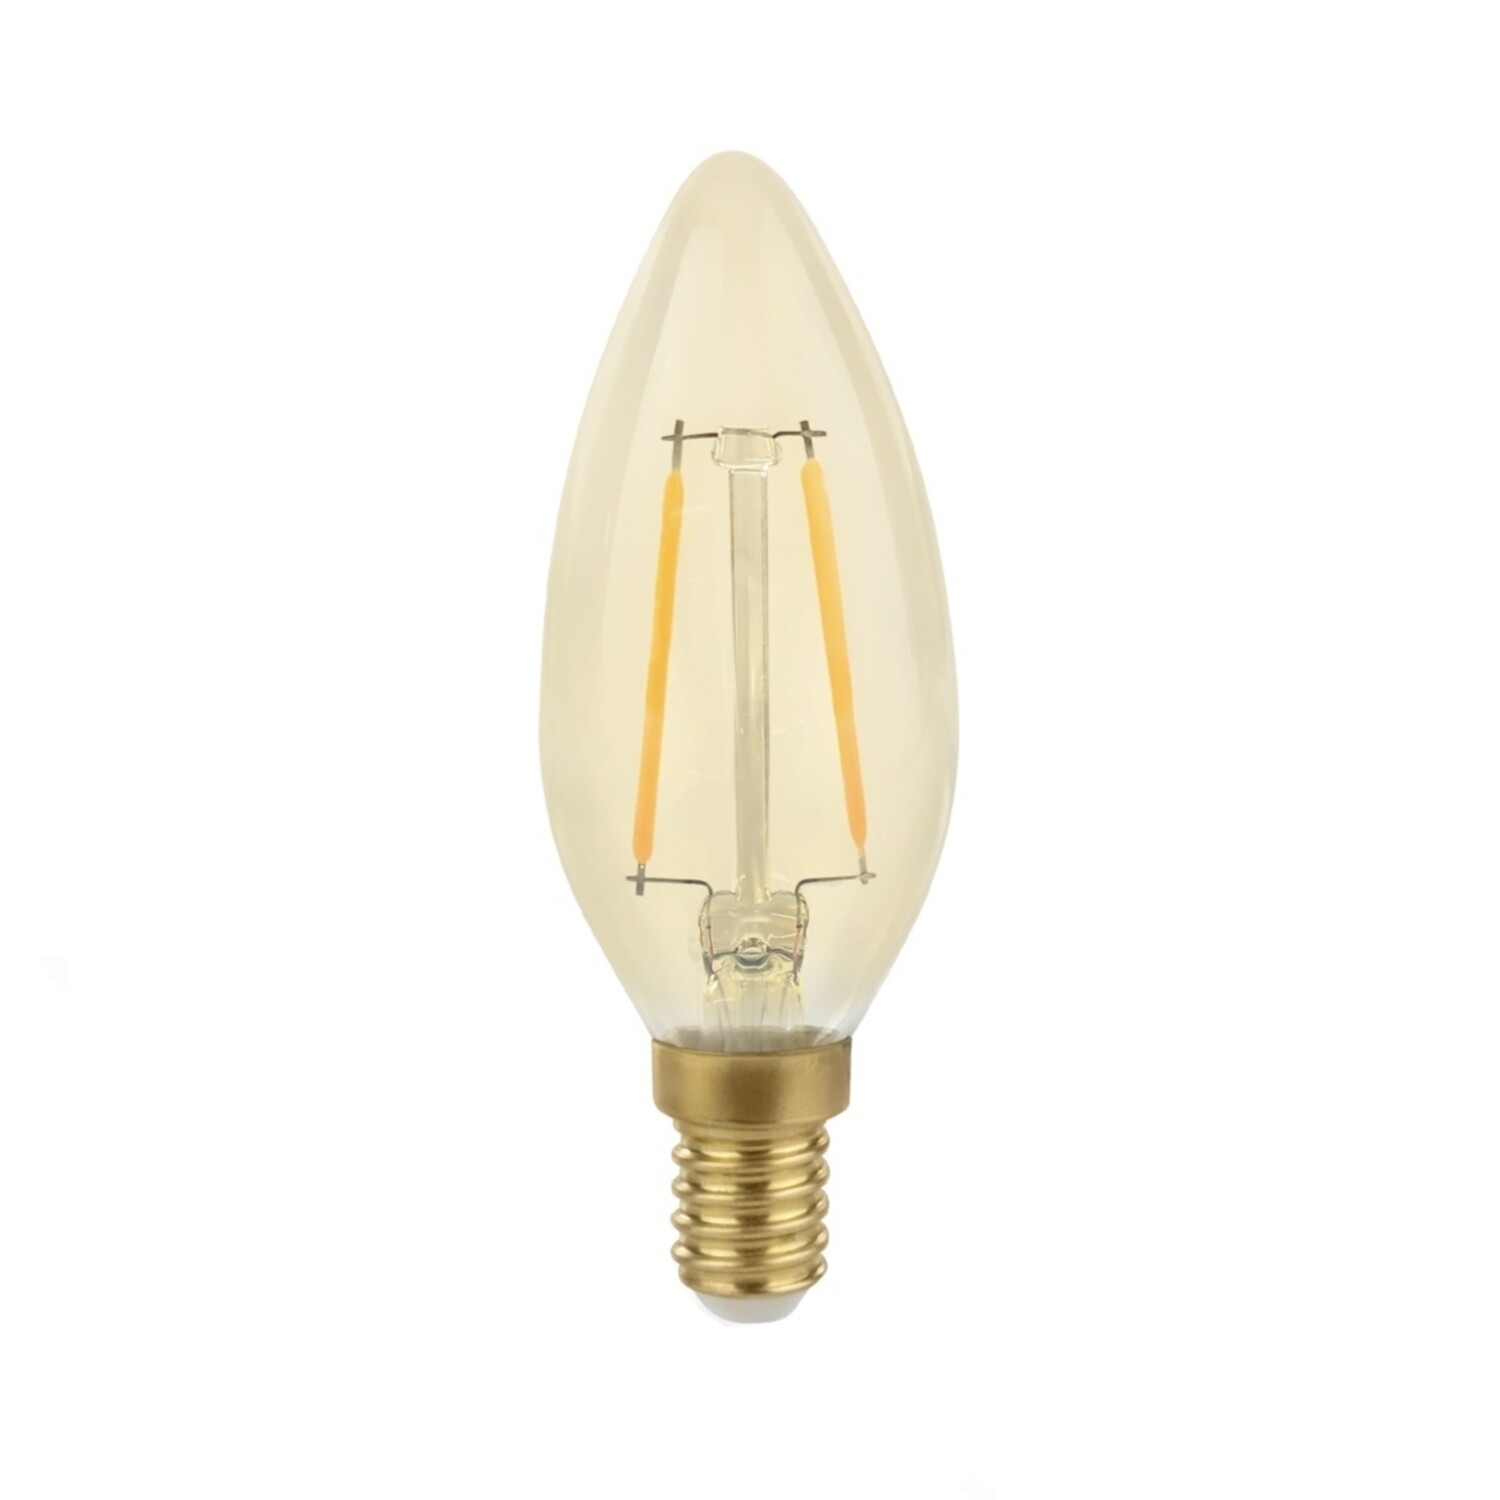 Möchten Sie einen Smart LED Dimmer für dimmbare LED-Lampen kaufen? 